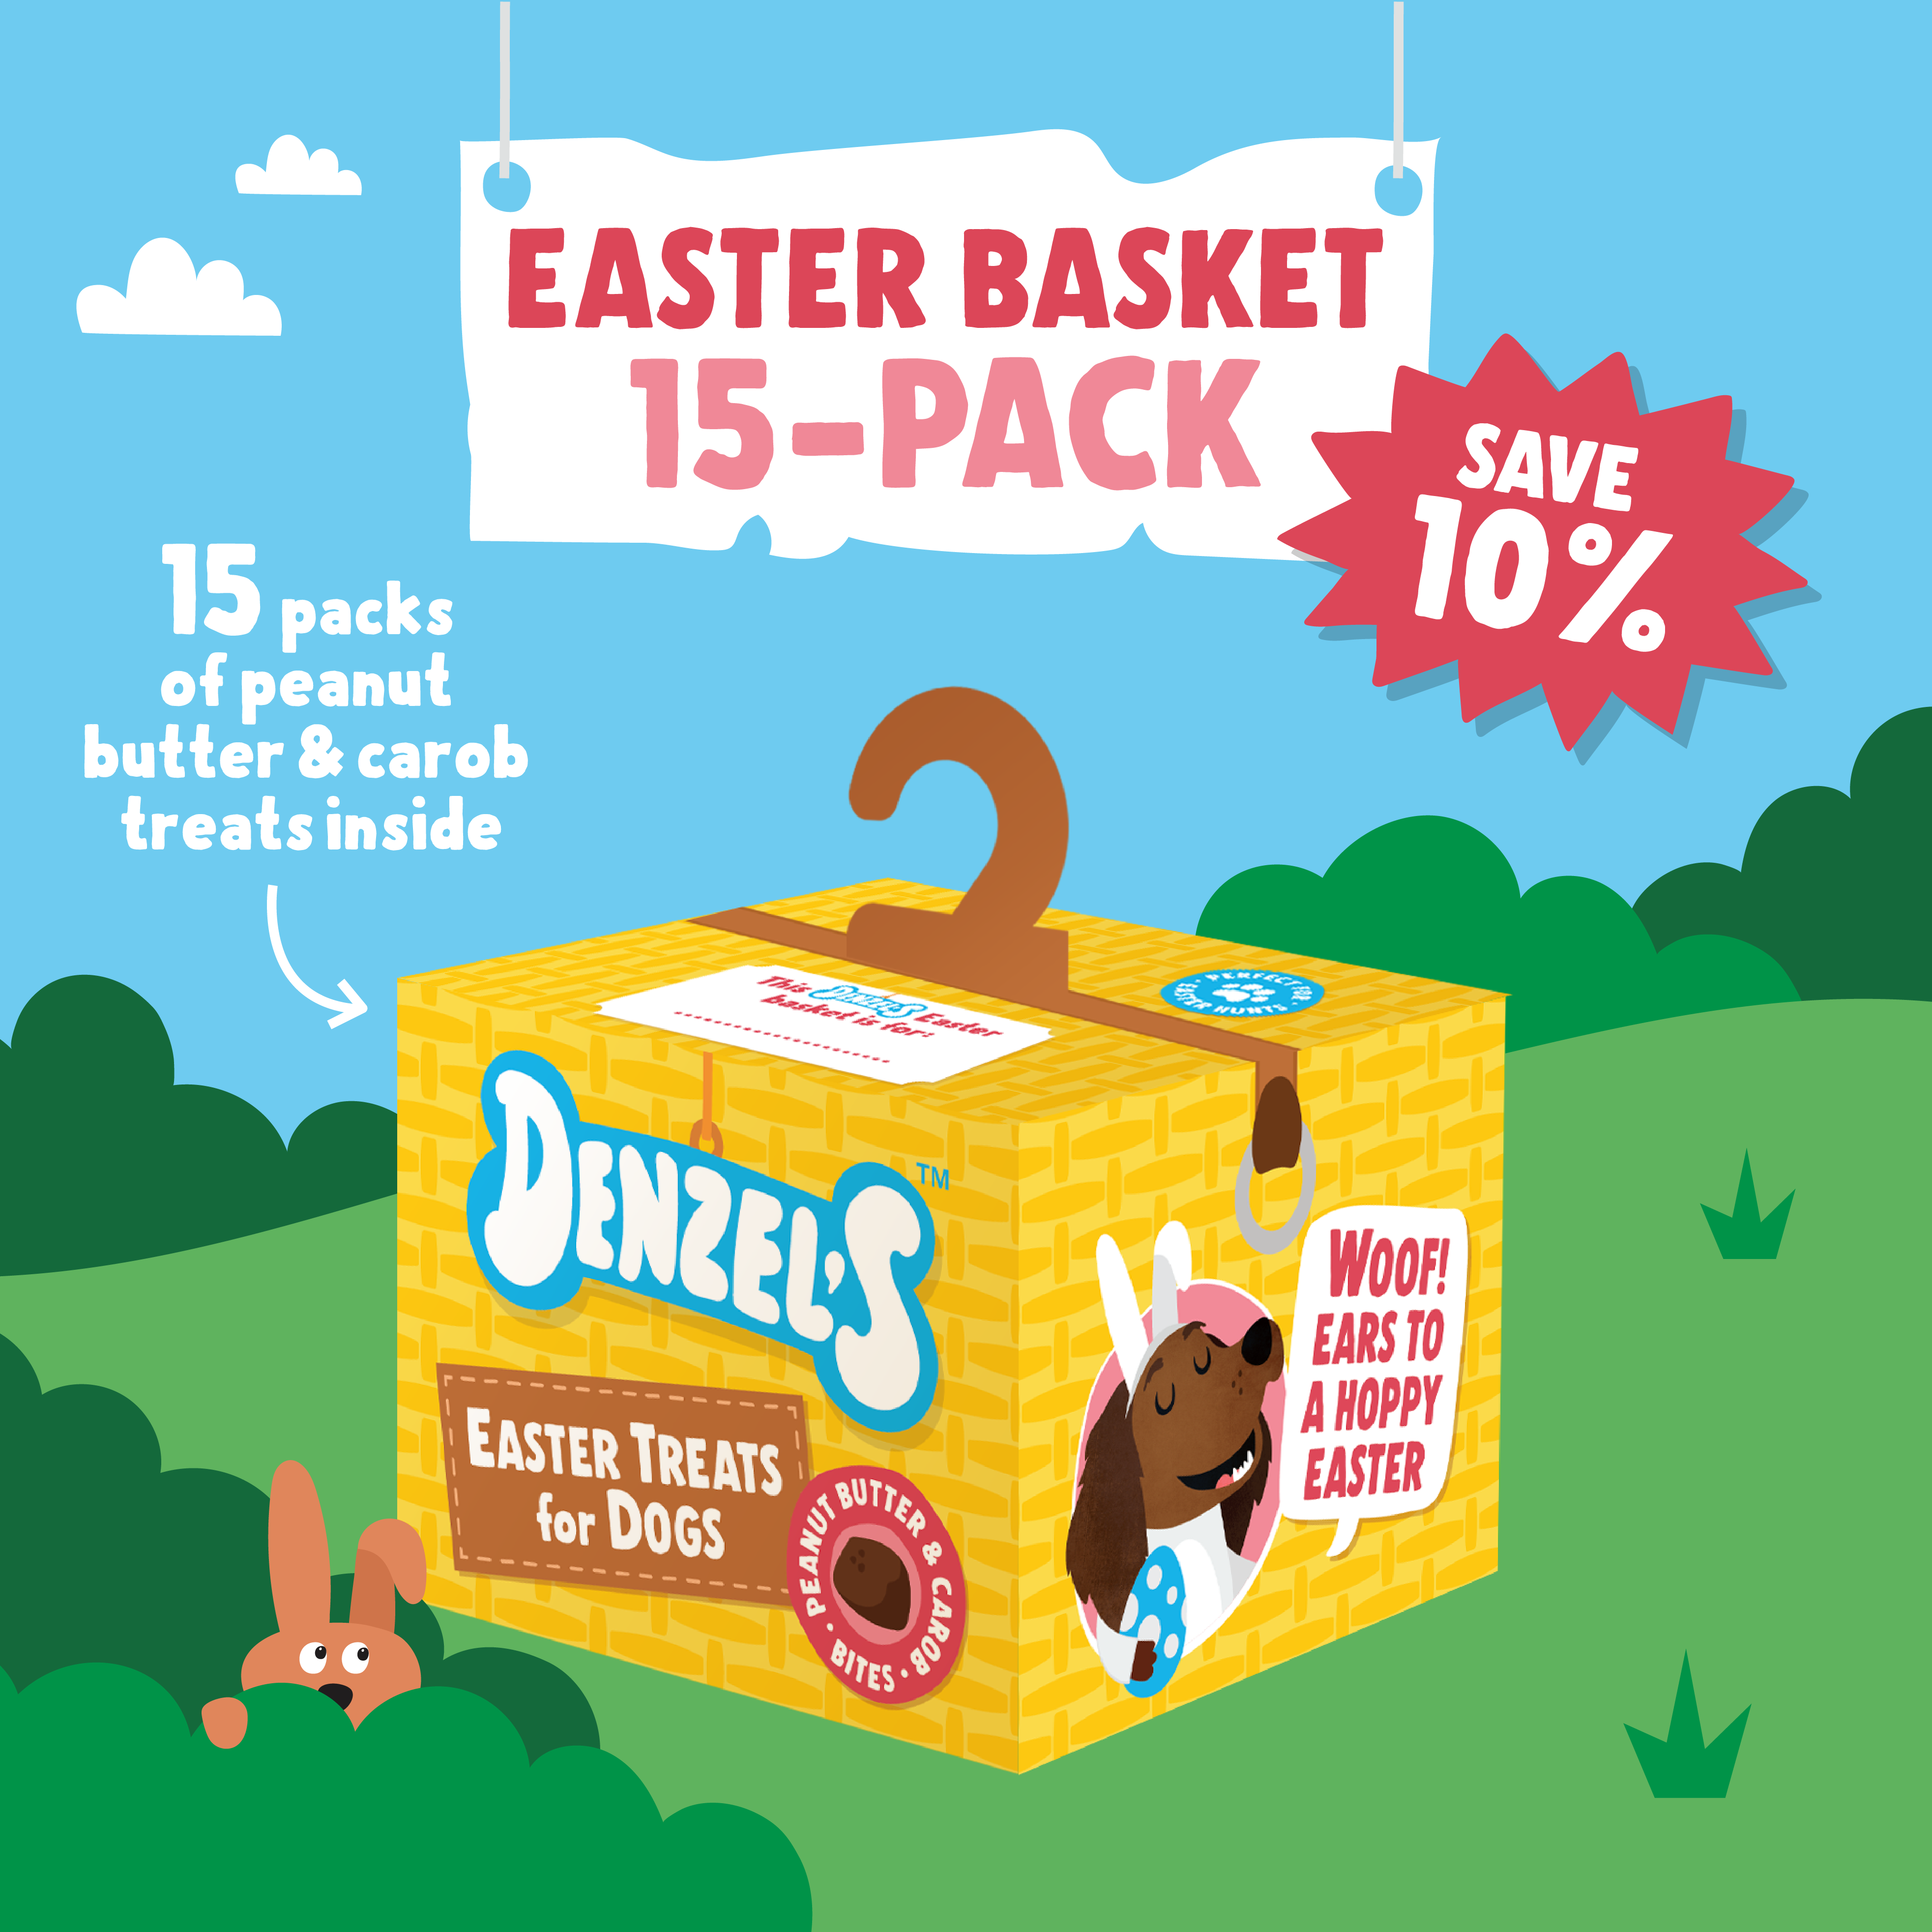 Easter Basket 15-Pack